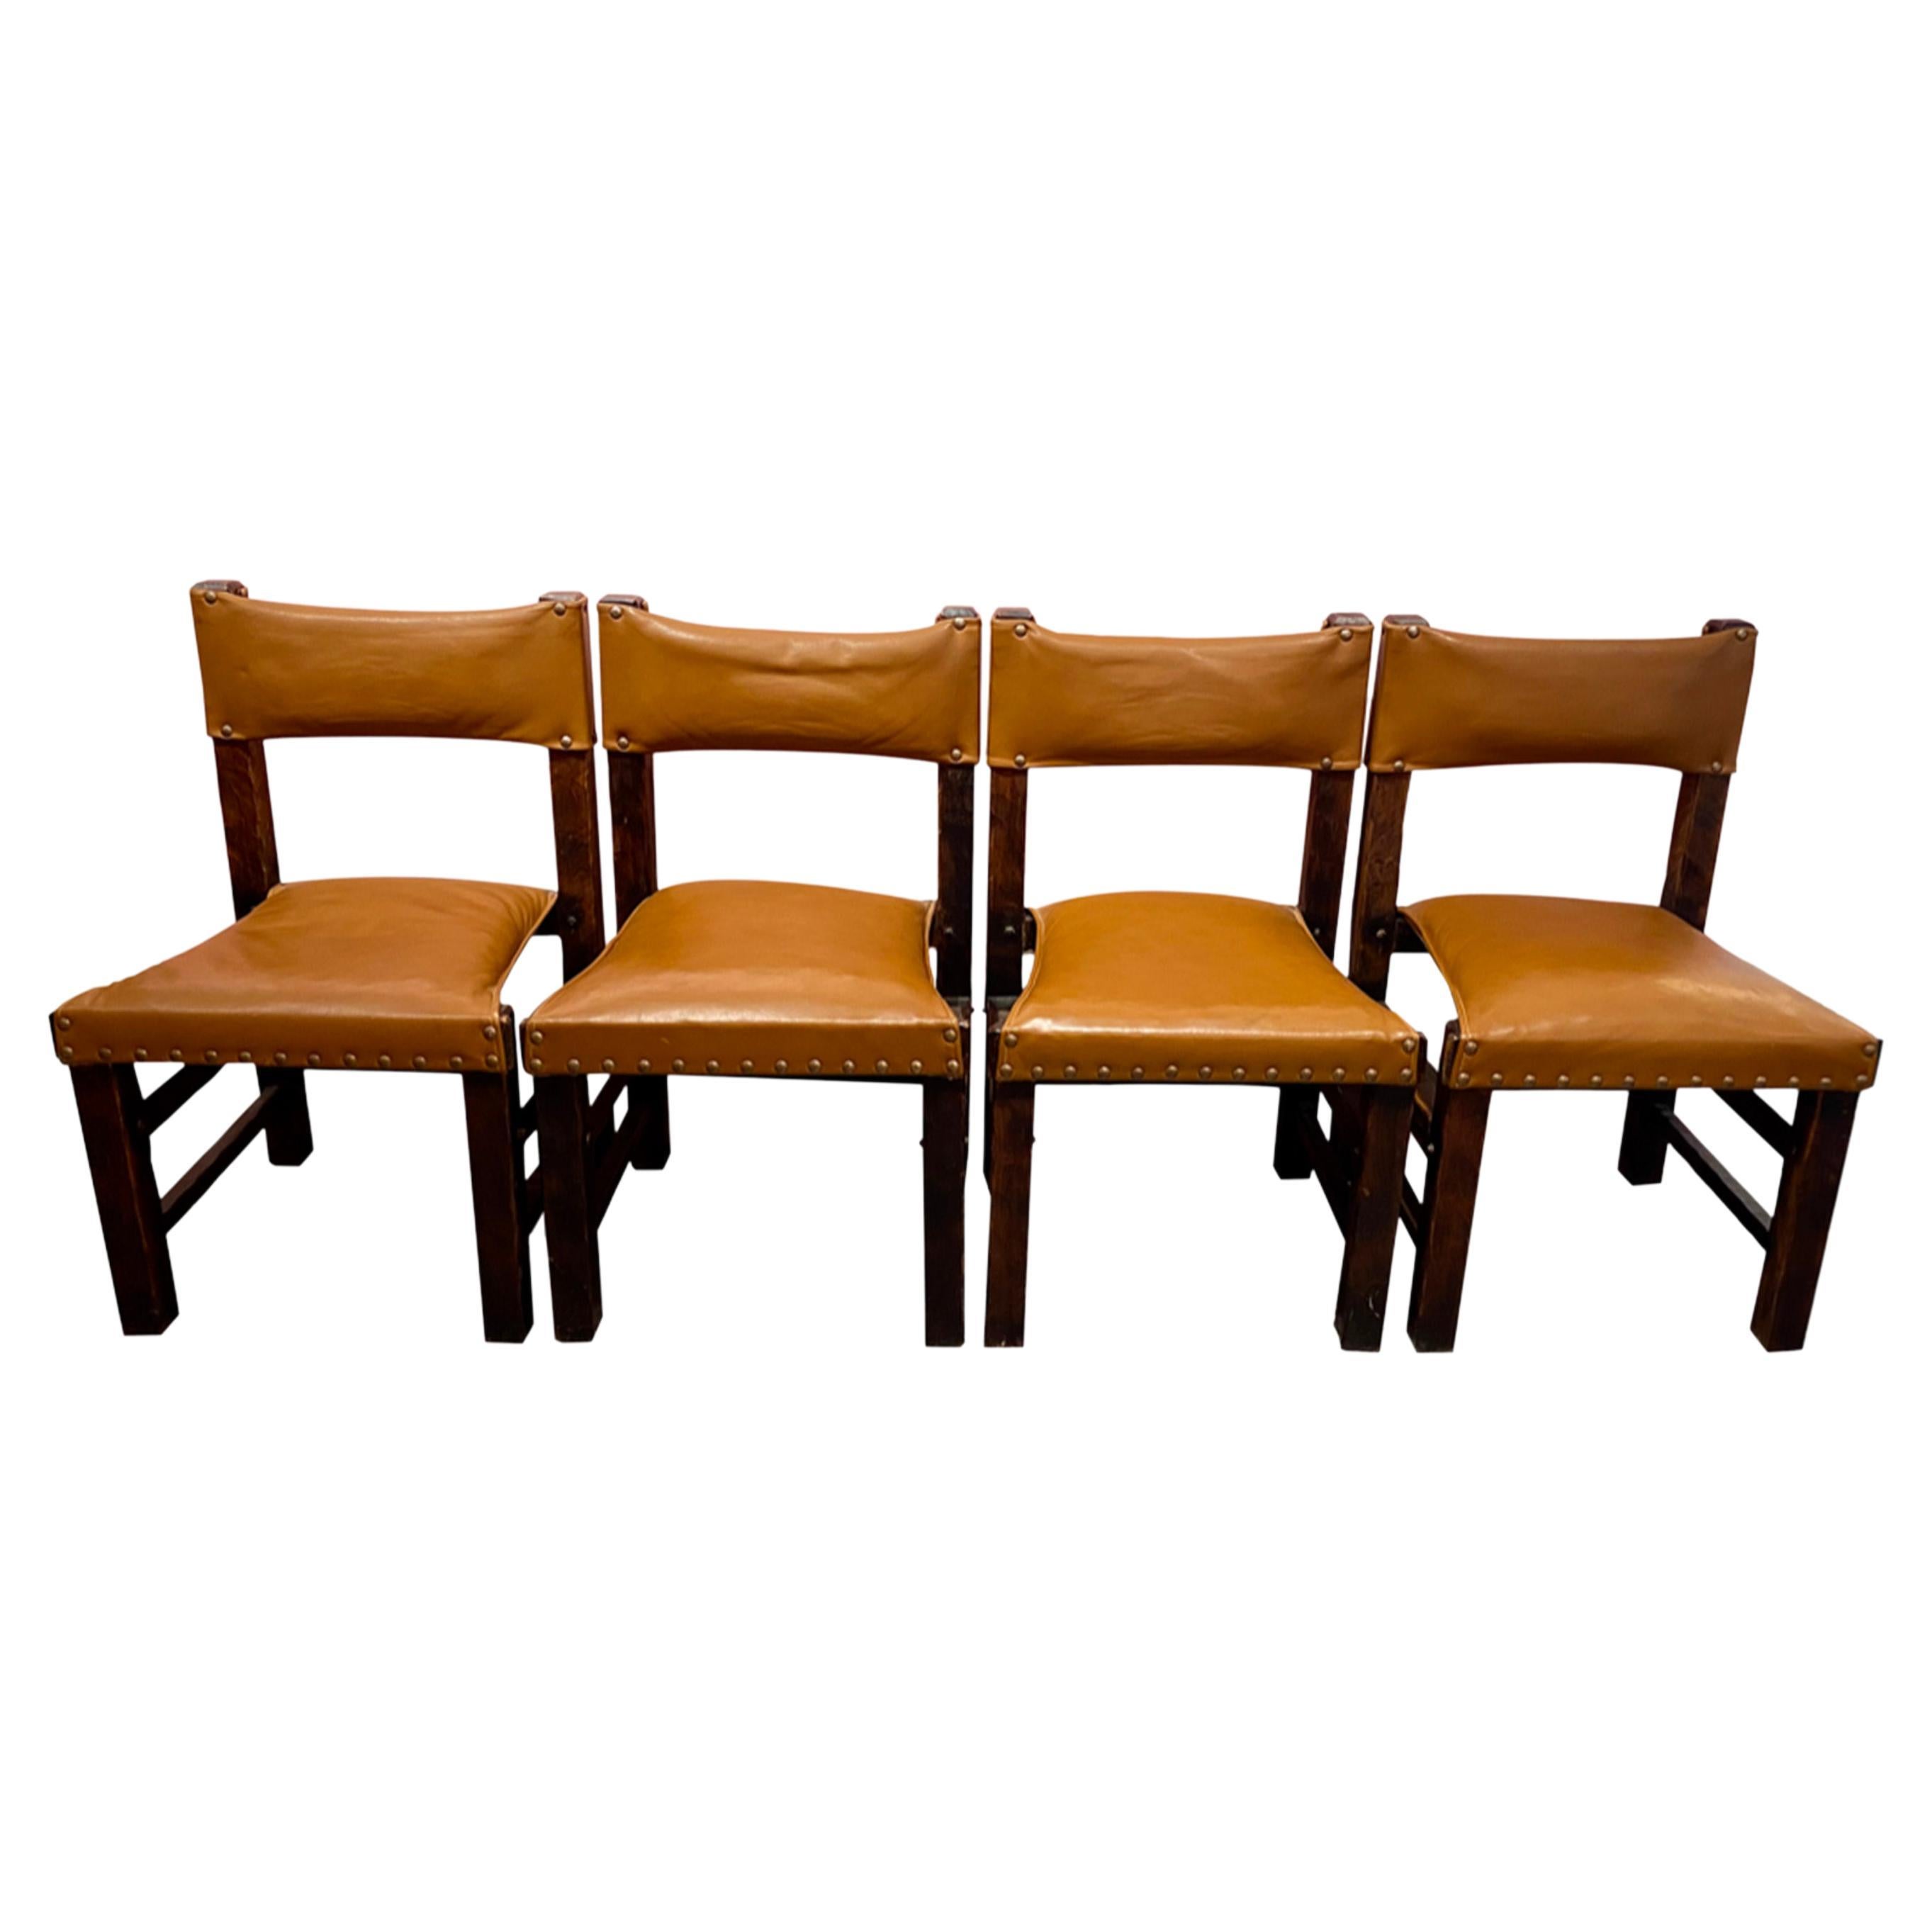 Satz von 4 brasilianischen Stühlen aus den 60er Jahren in Leder und Holz.